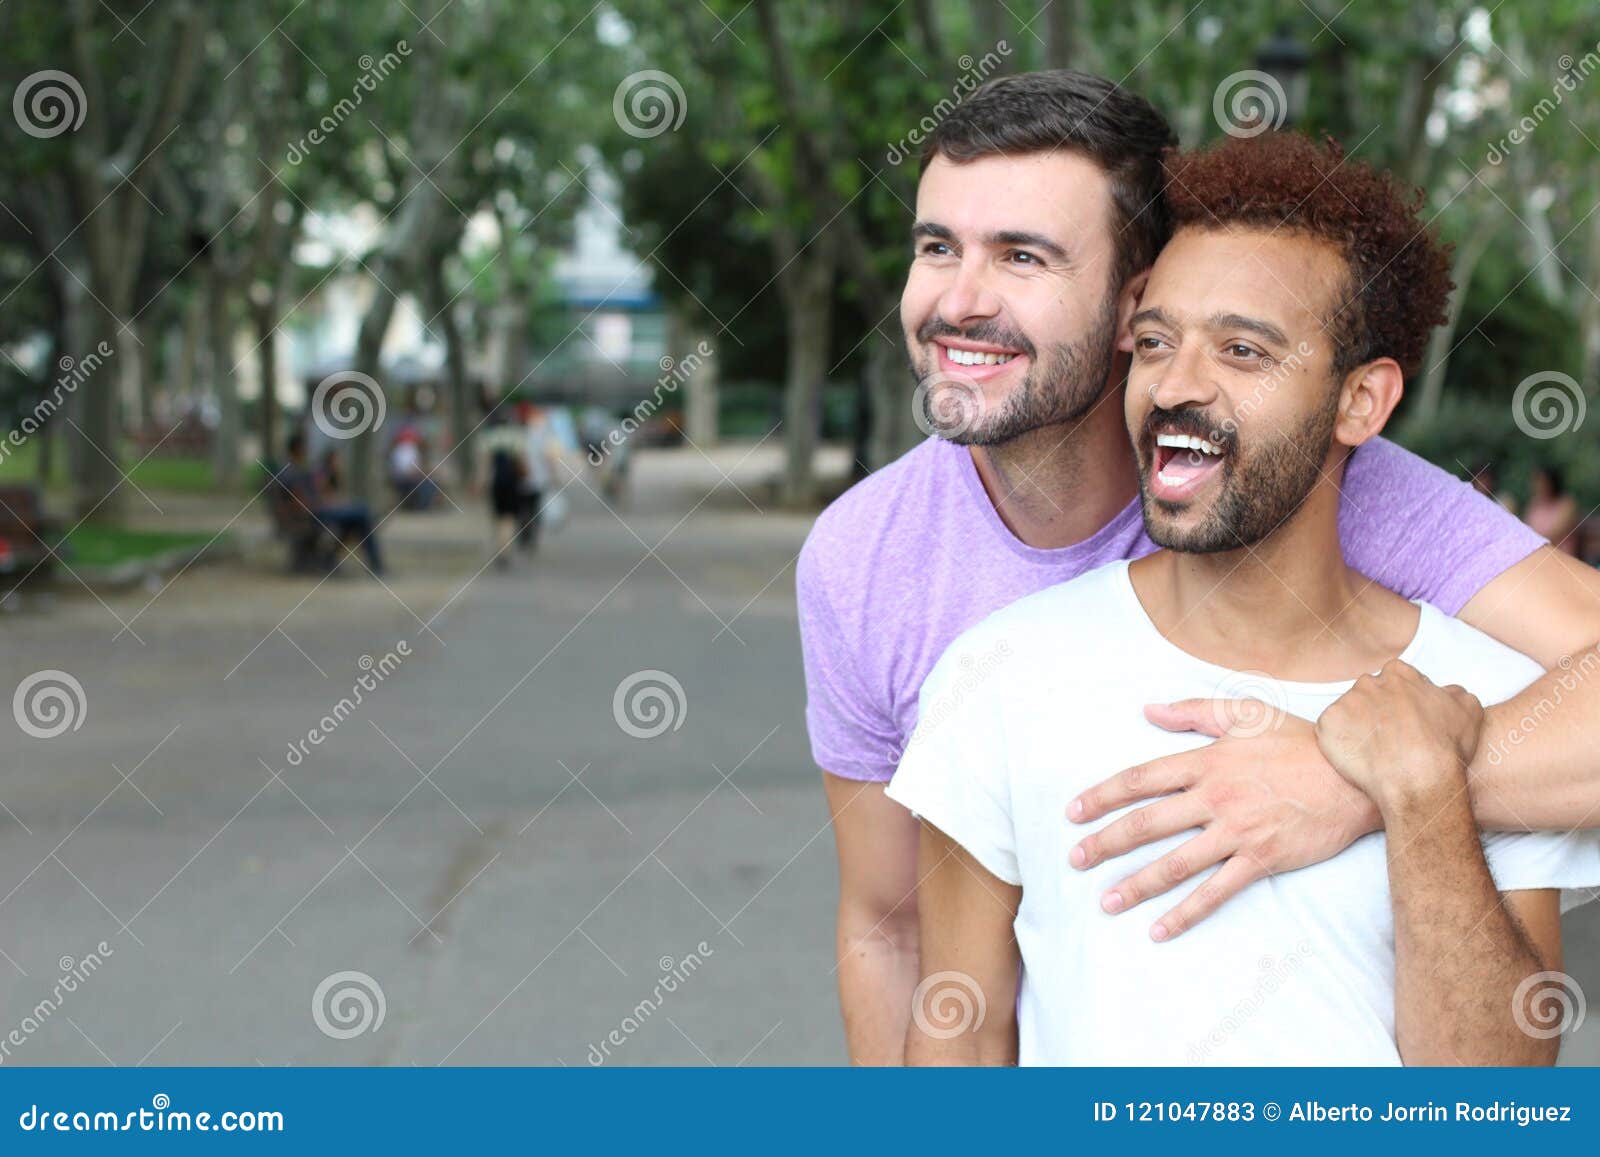 active gay interracial